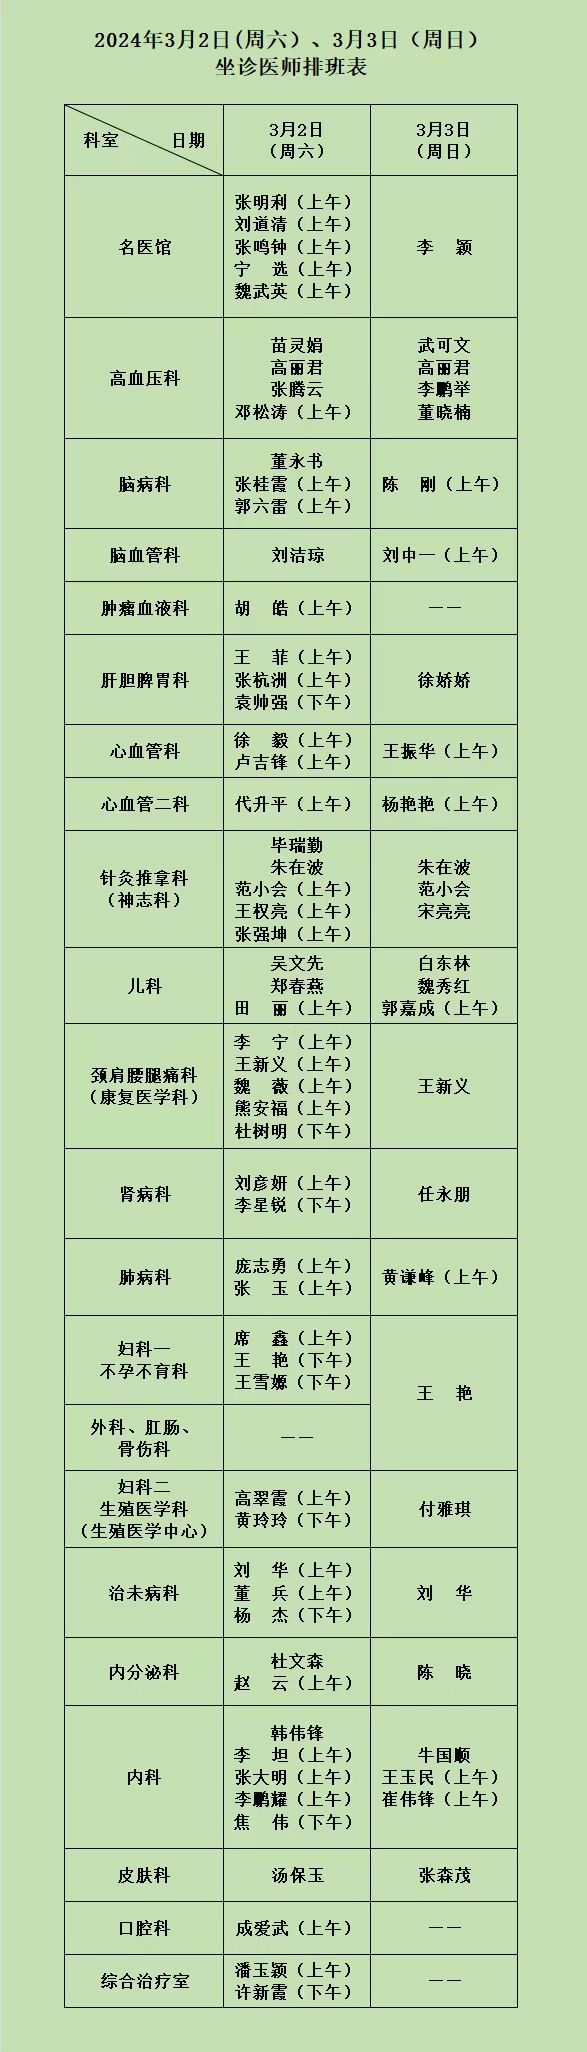 河南省中西医结合医院3月2日（周六）、3日（周日）坐诊医师排班表.jpg